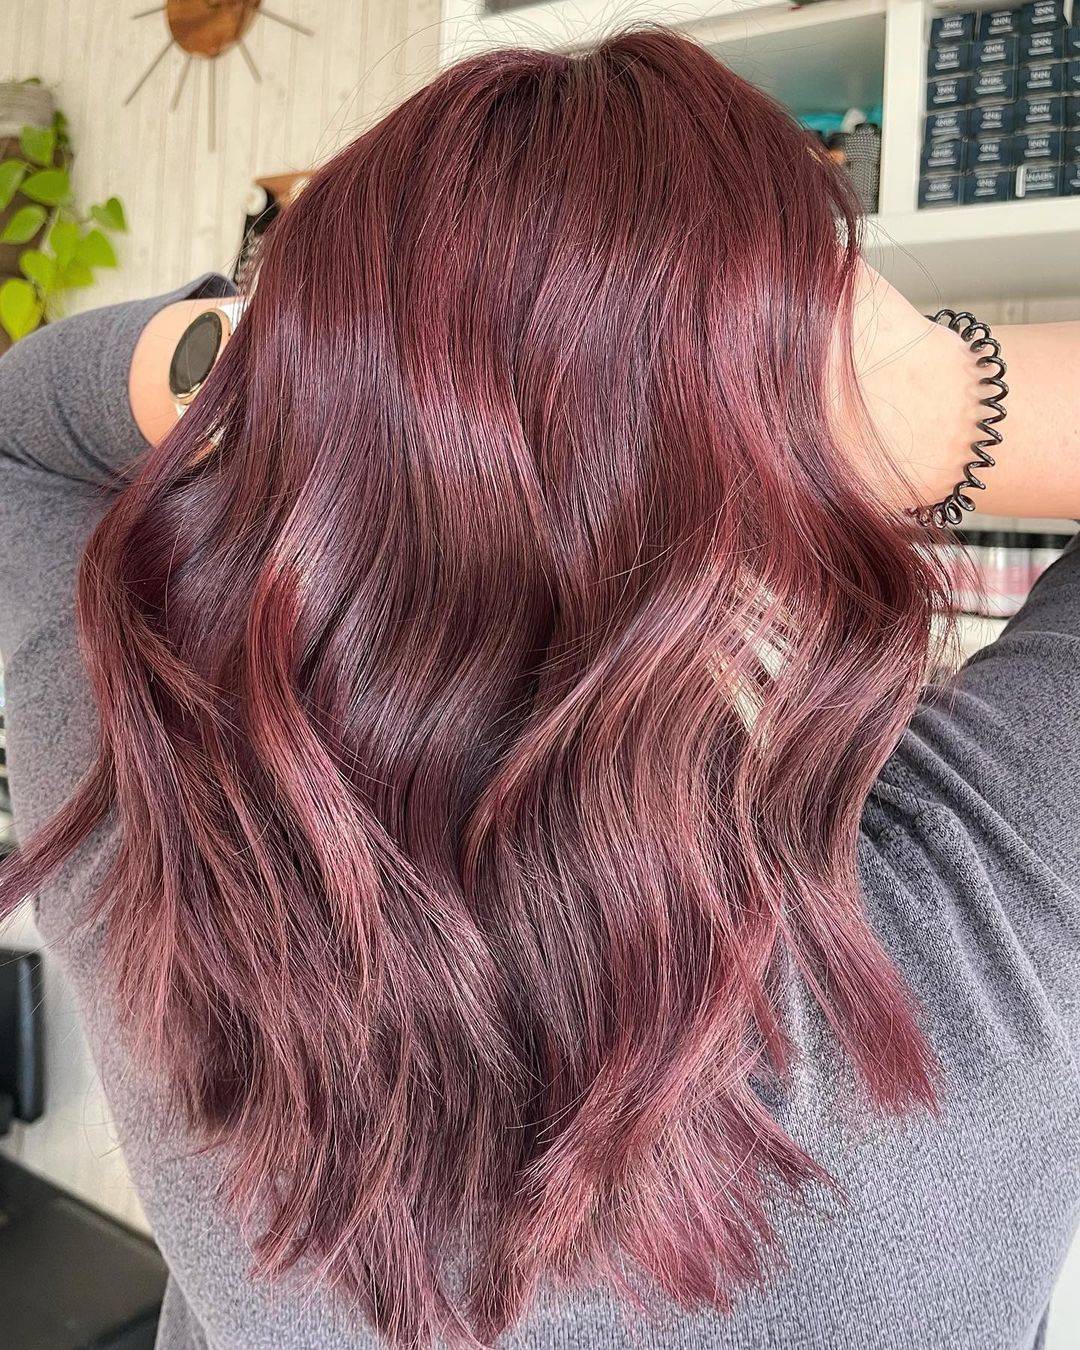 Burgundy hair color 287 burgundy hair color | burgundy hair color for women | burgundy hair color highlights Burgundy Hair Color